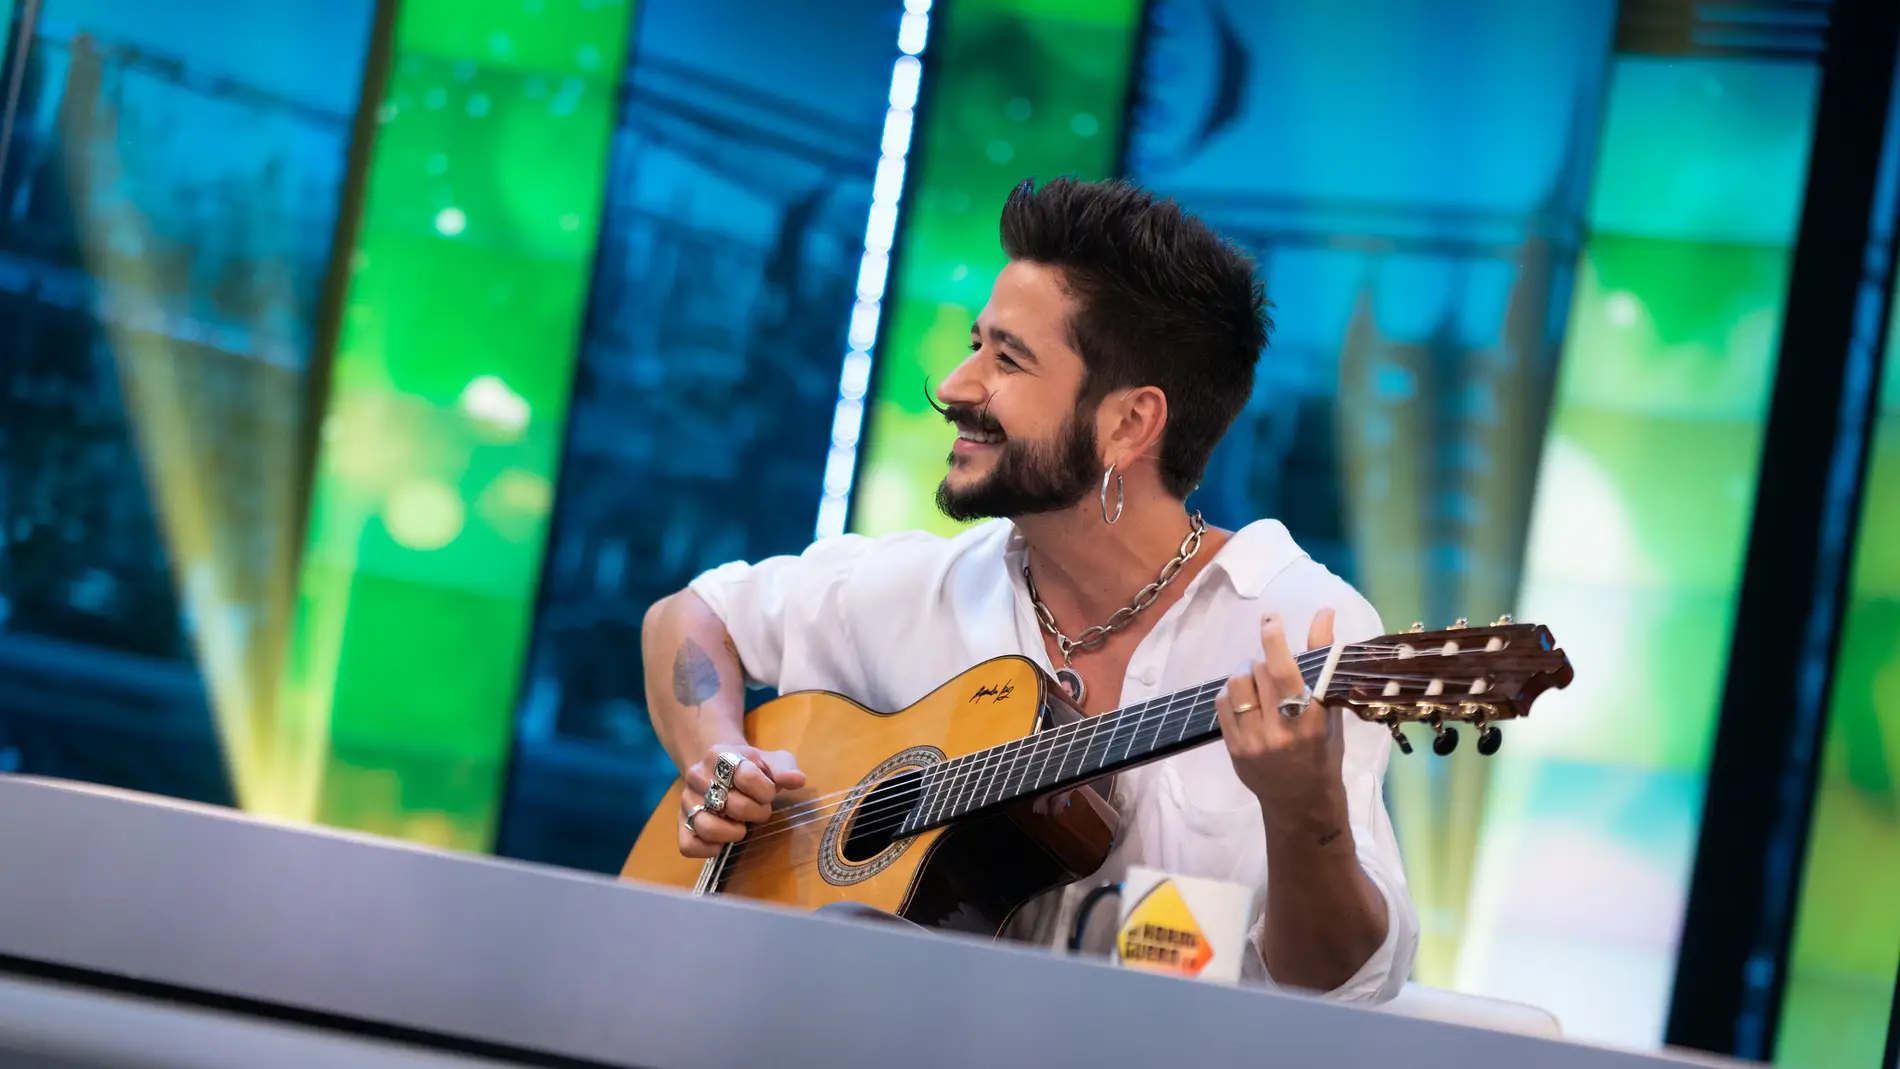 Camilo emociona al cantar 'Millones' a guitarra en 'El Hormiguero'